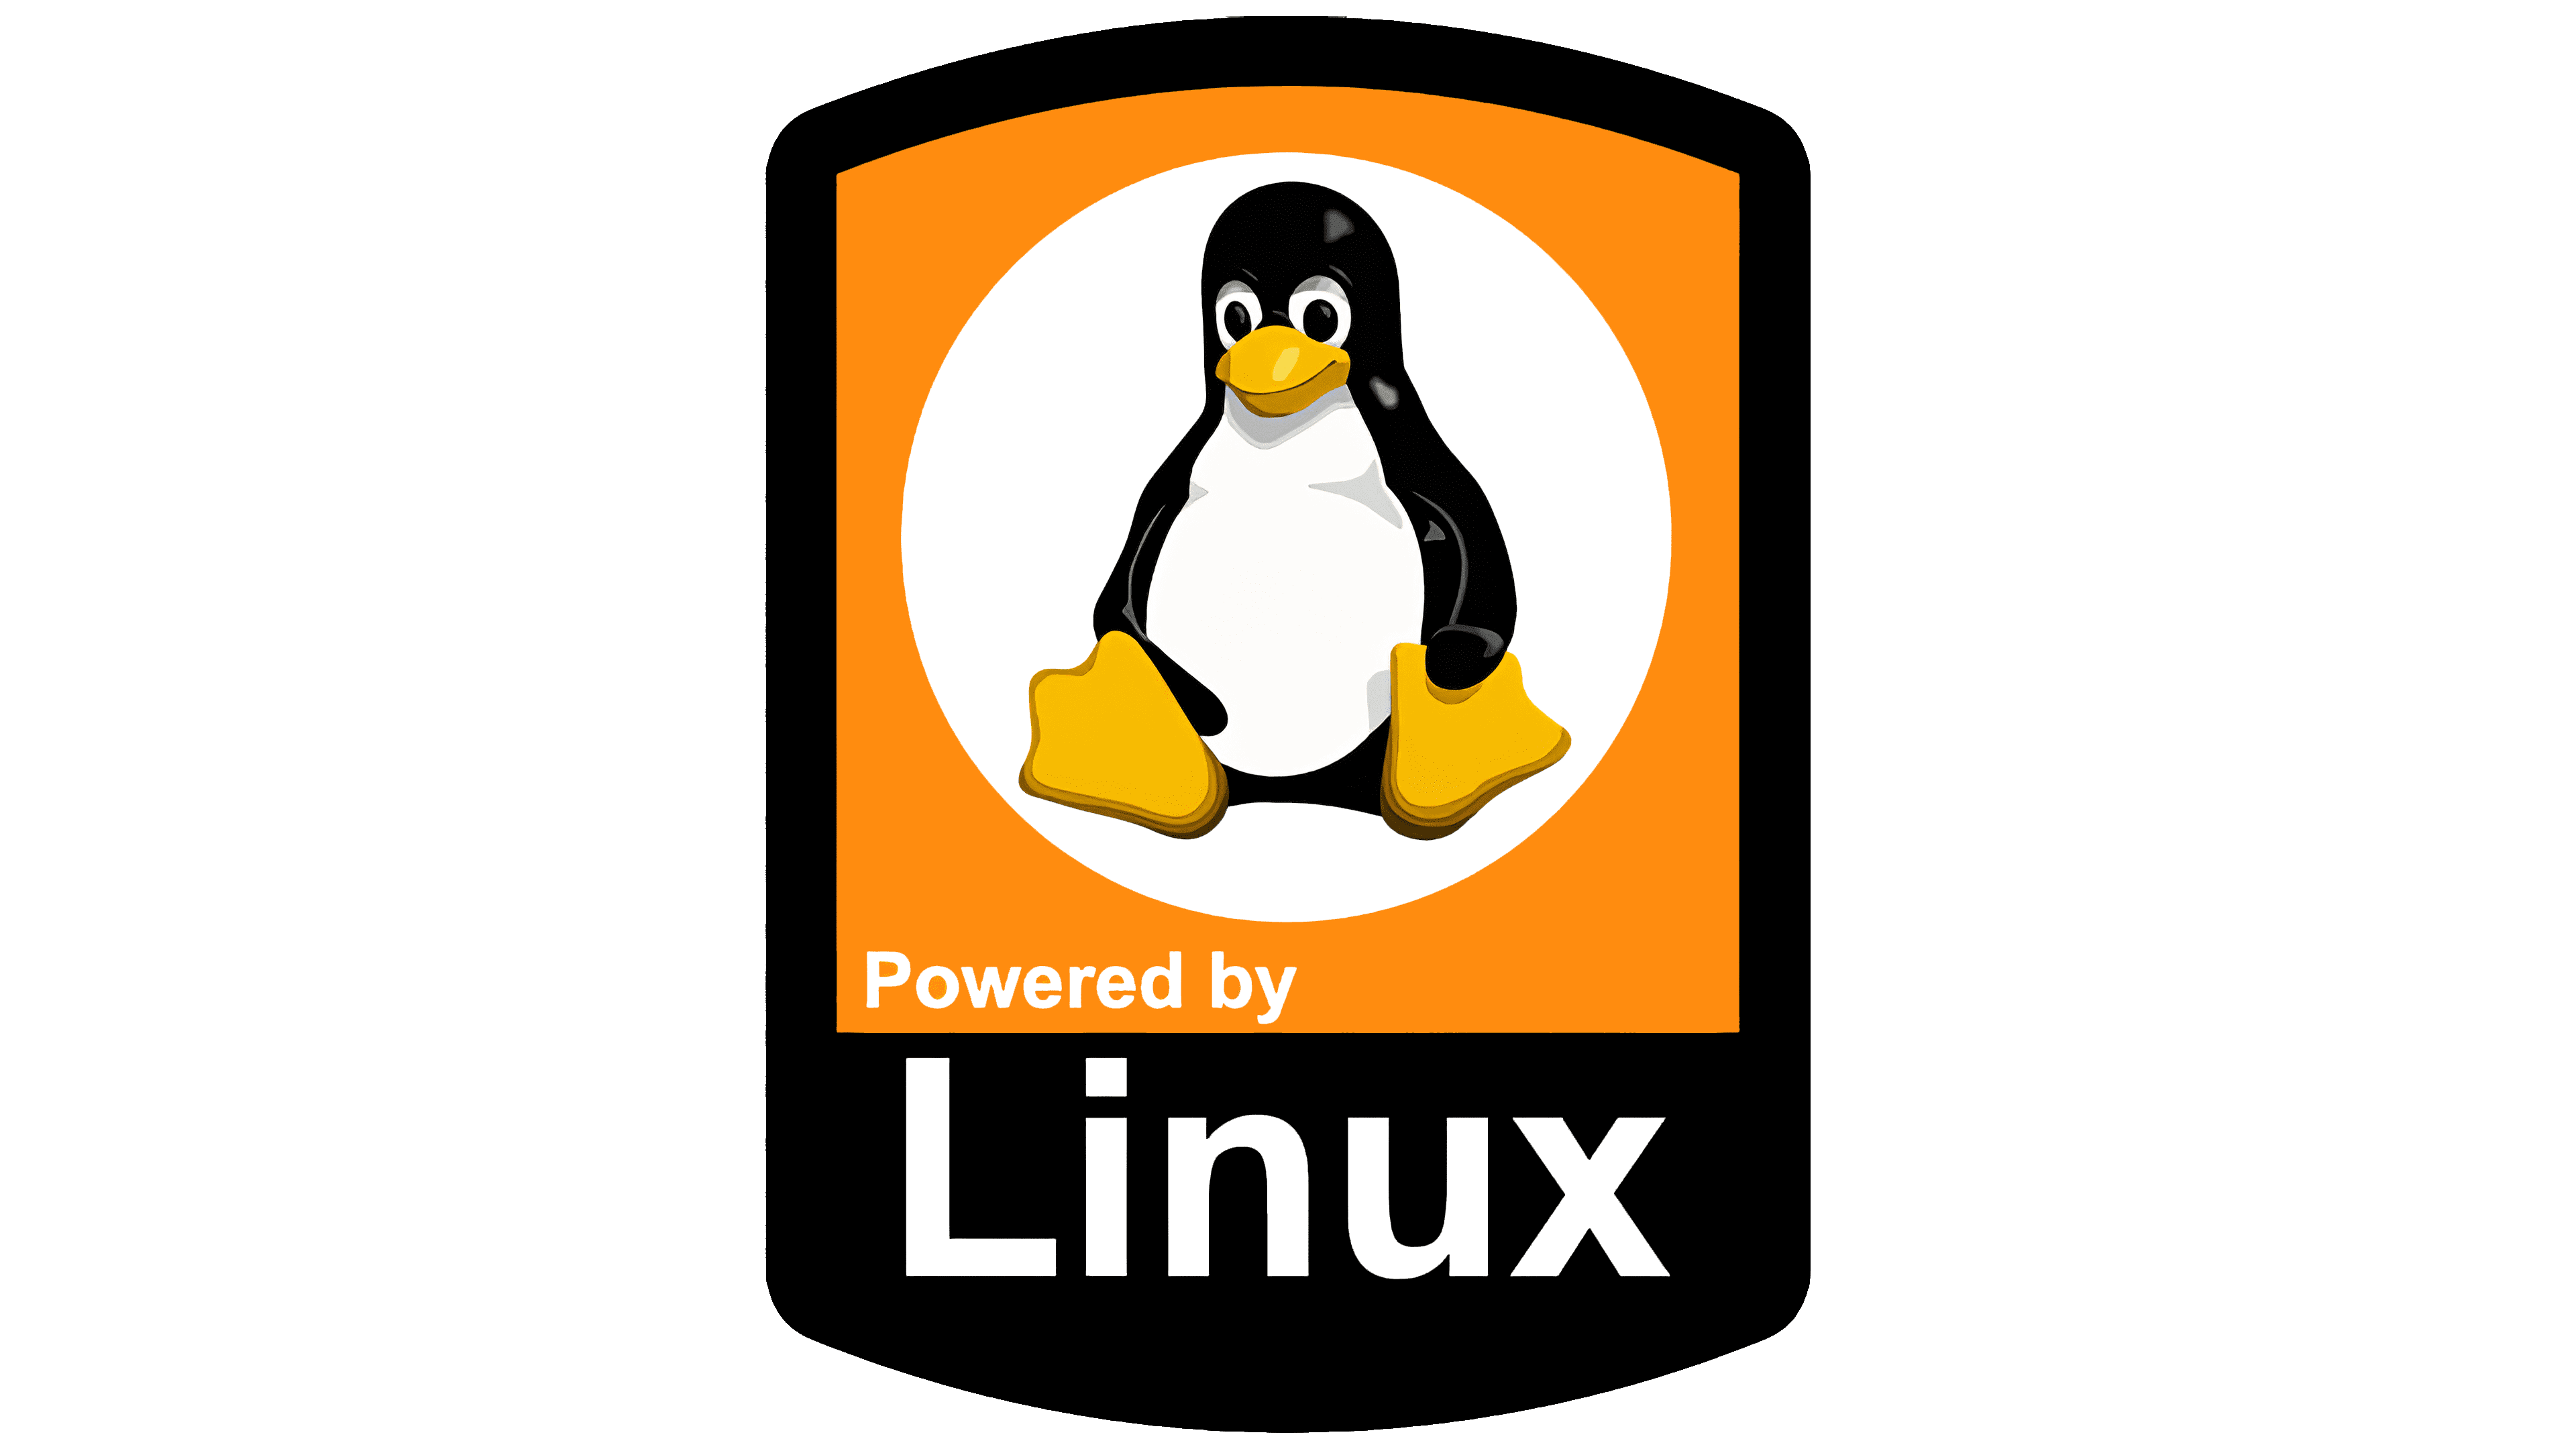 Linux png. Linux логотип. Линукс логотип на прозрачном фоне. Операционная система линукс логотип. Пингвин Tux символ Linux.